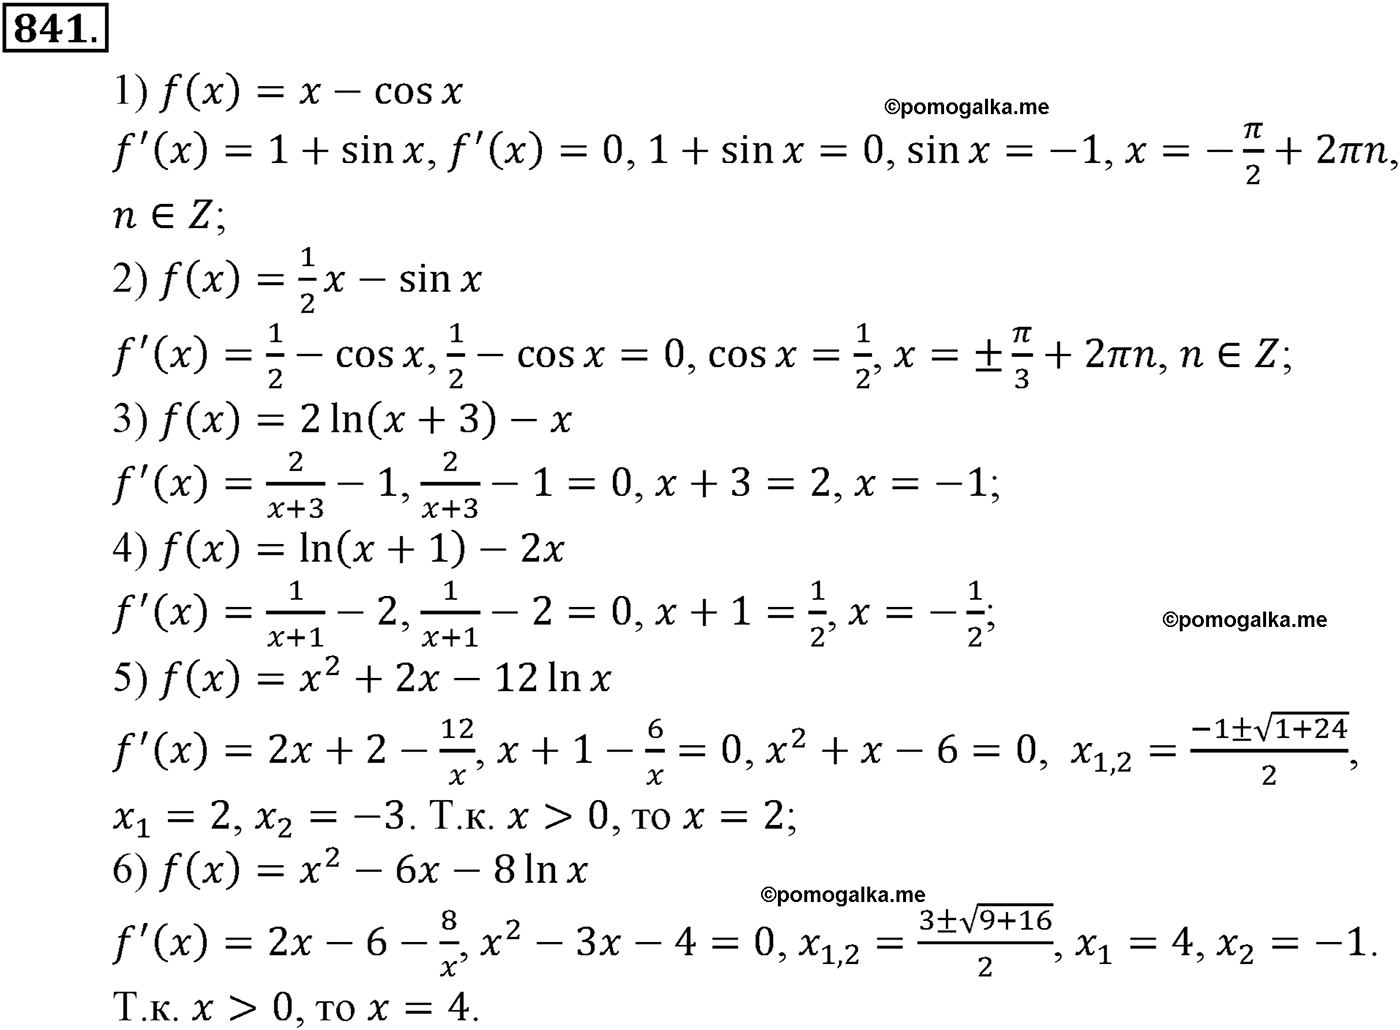 разбор задачи №841 по алгебре за 10-11 класс из учебника Алимова, Колягина